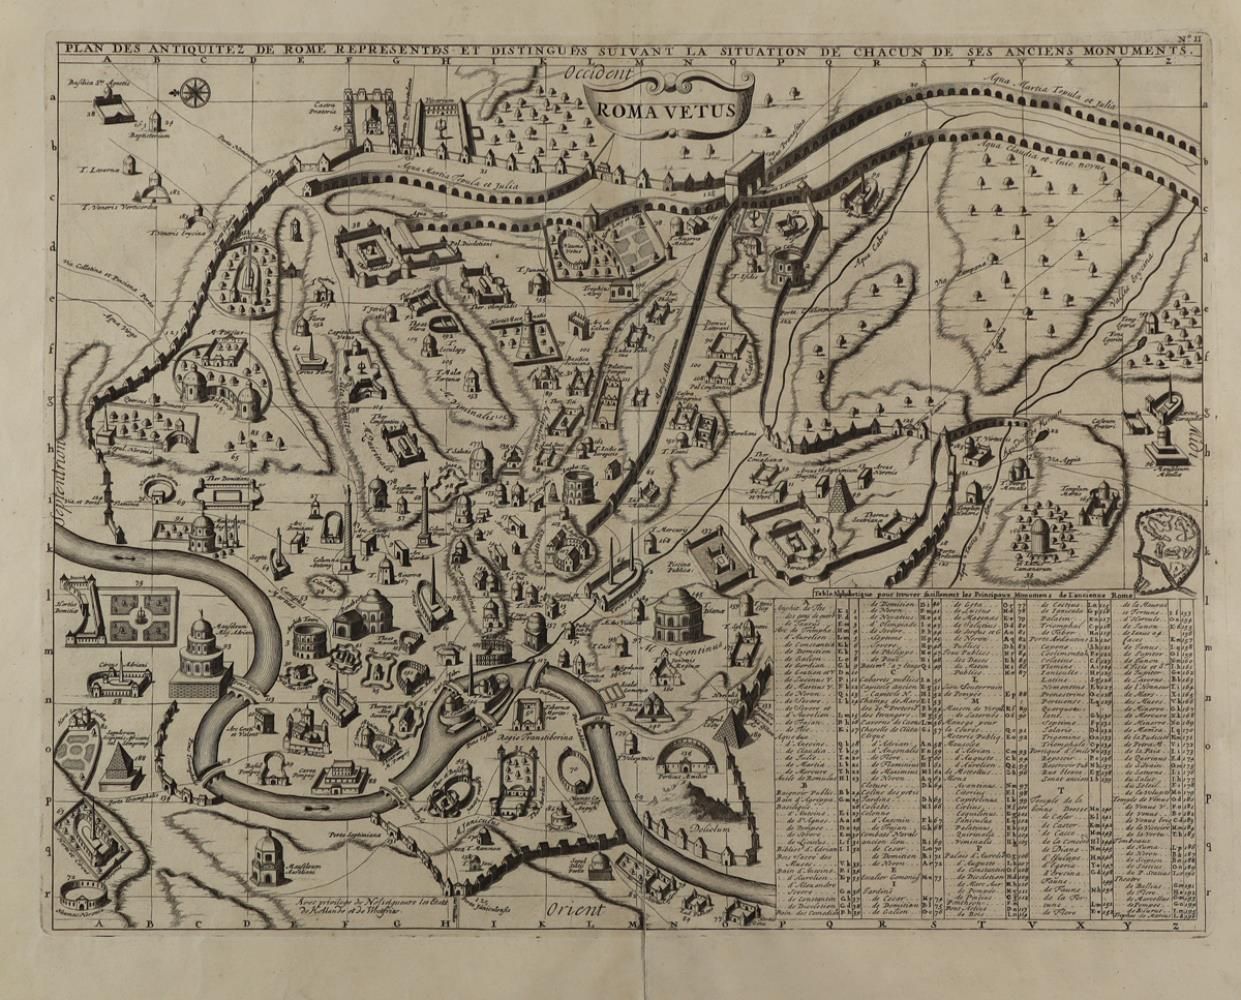 Rom. Rome Vetus, Plan des antiquez de rome representes Copper engraved map of an&hellip;